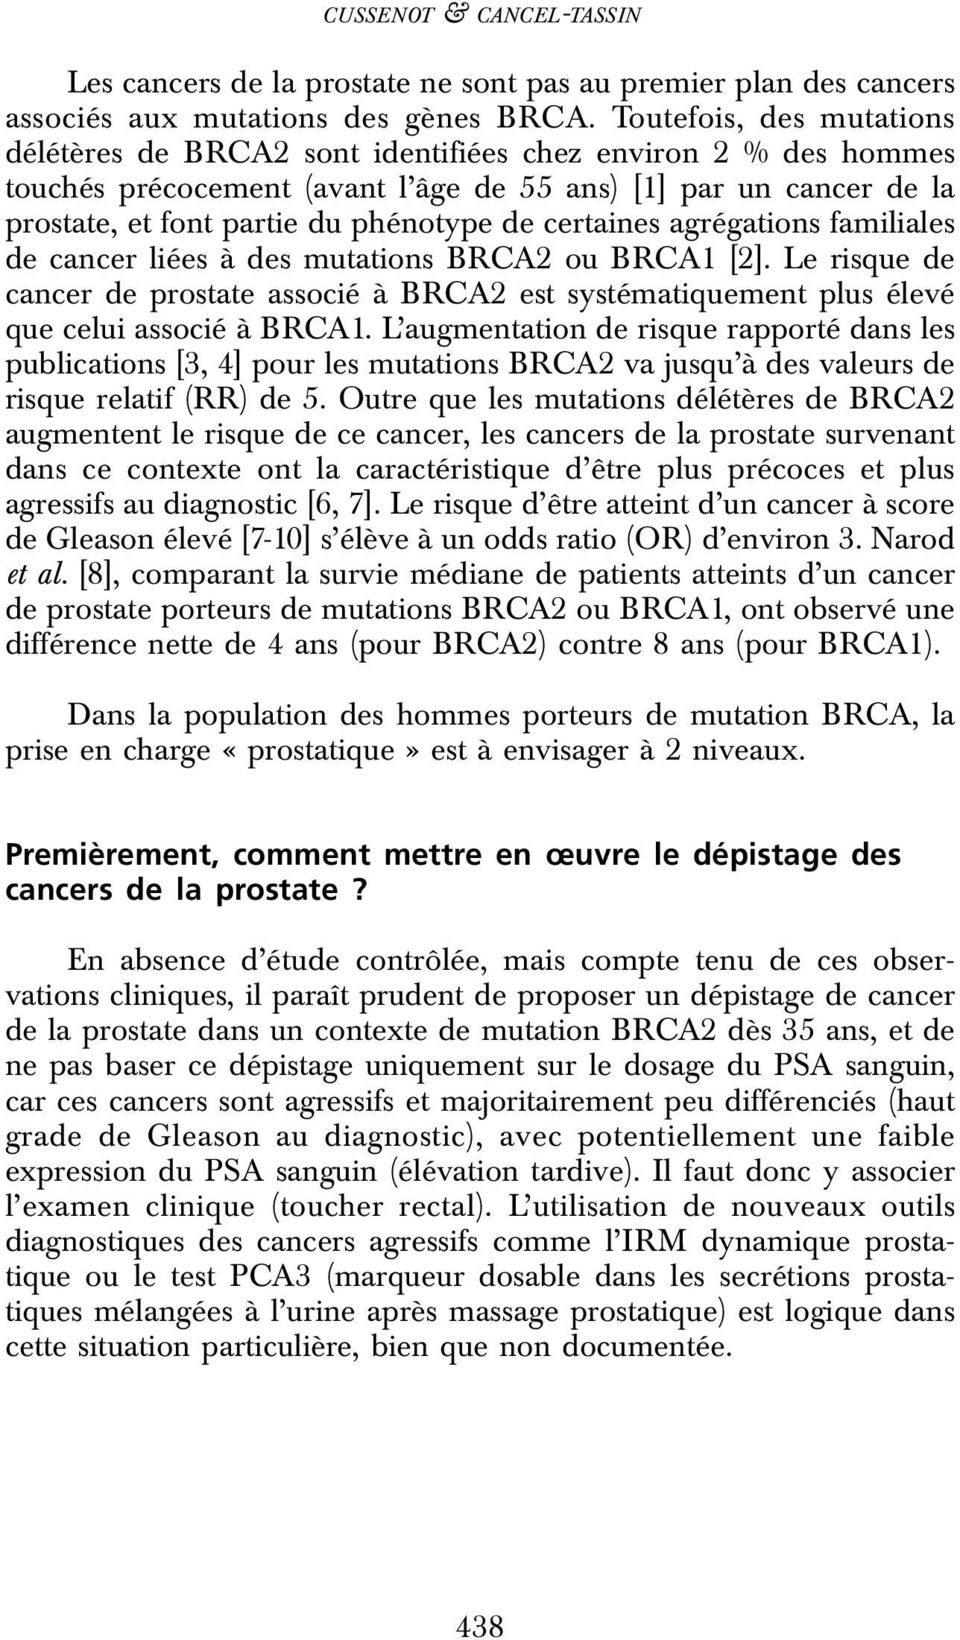 certaines agrégations familiales de cancer liées à des mutations BRCA2 ou BRCA1 [2]. Le risque de cancer de prostate associé à BRCA2 est systématiquement plus élevé que celui associé à BRCA1.